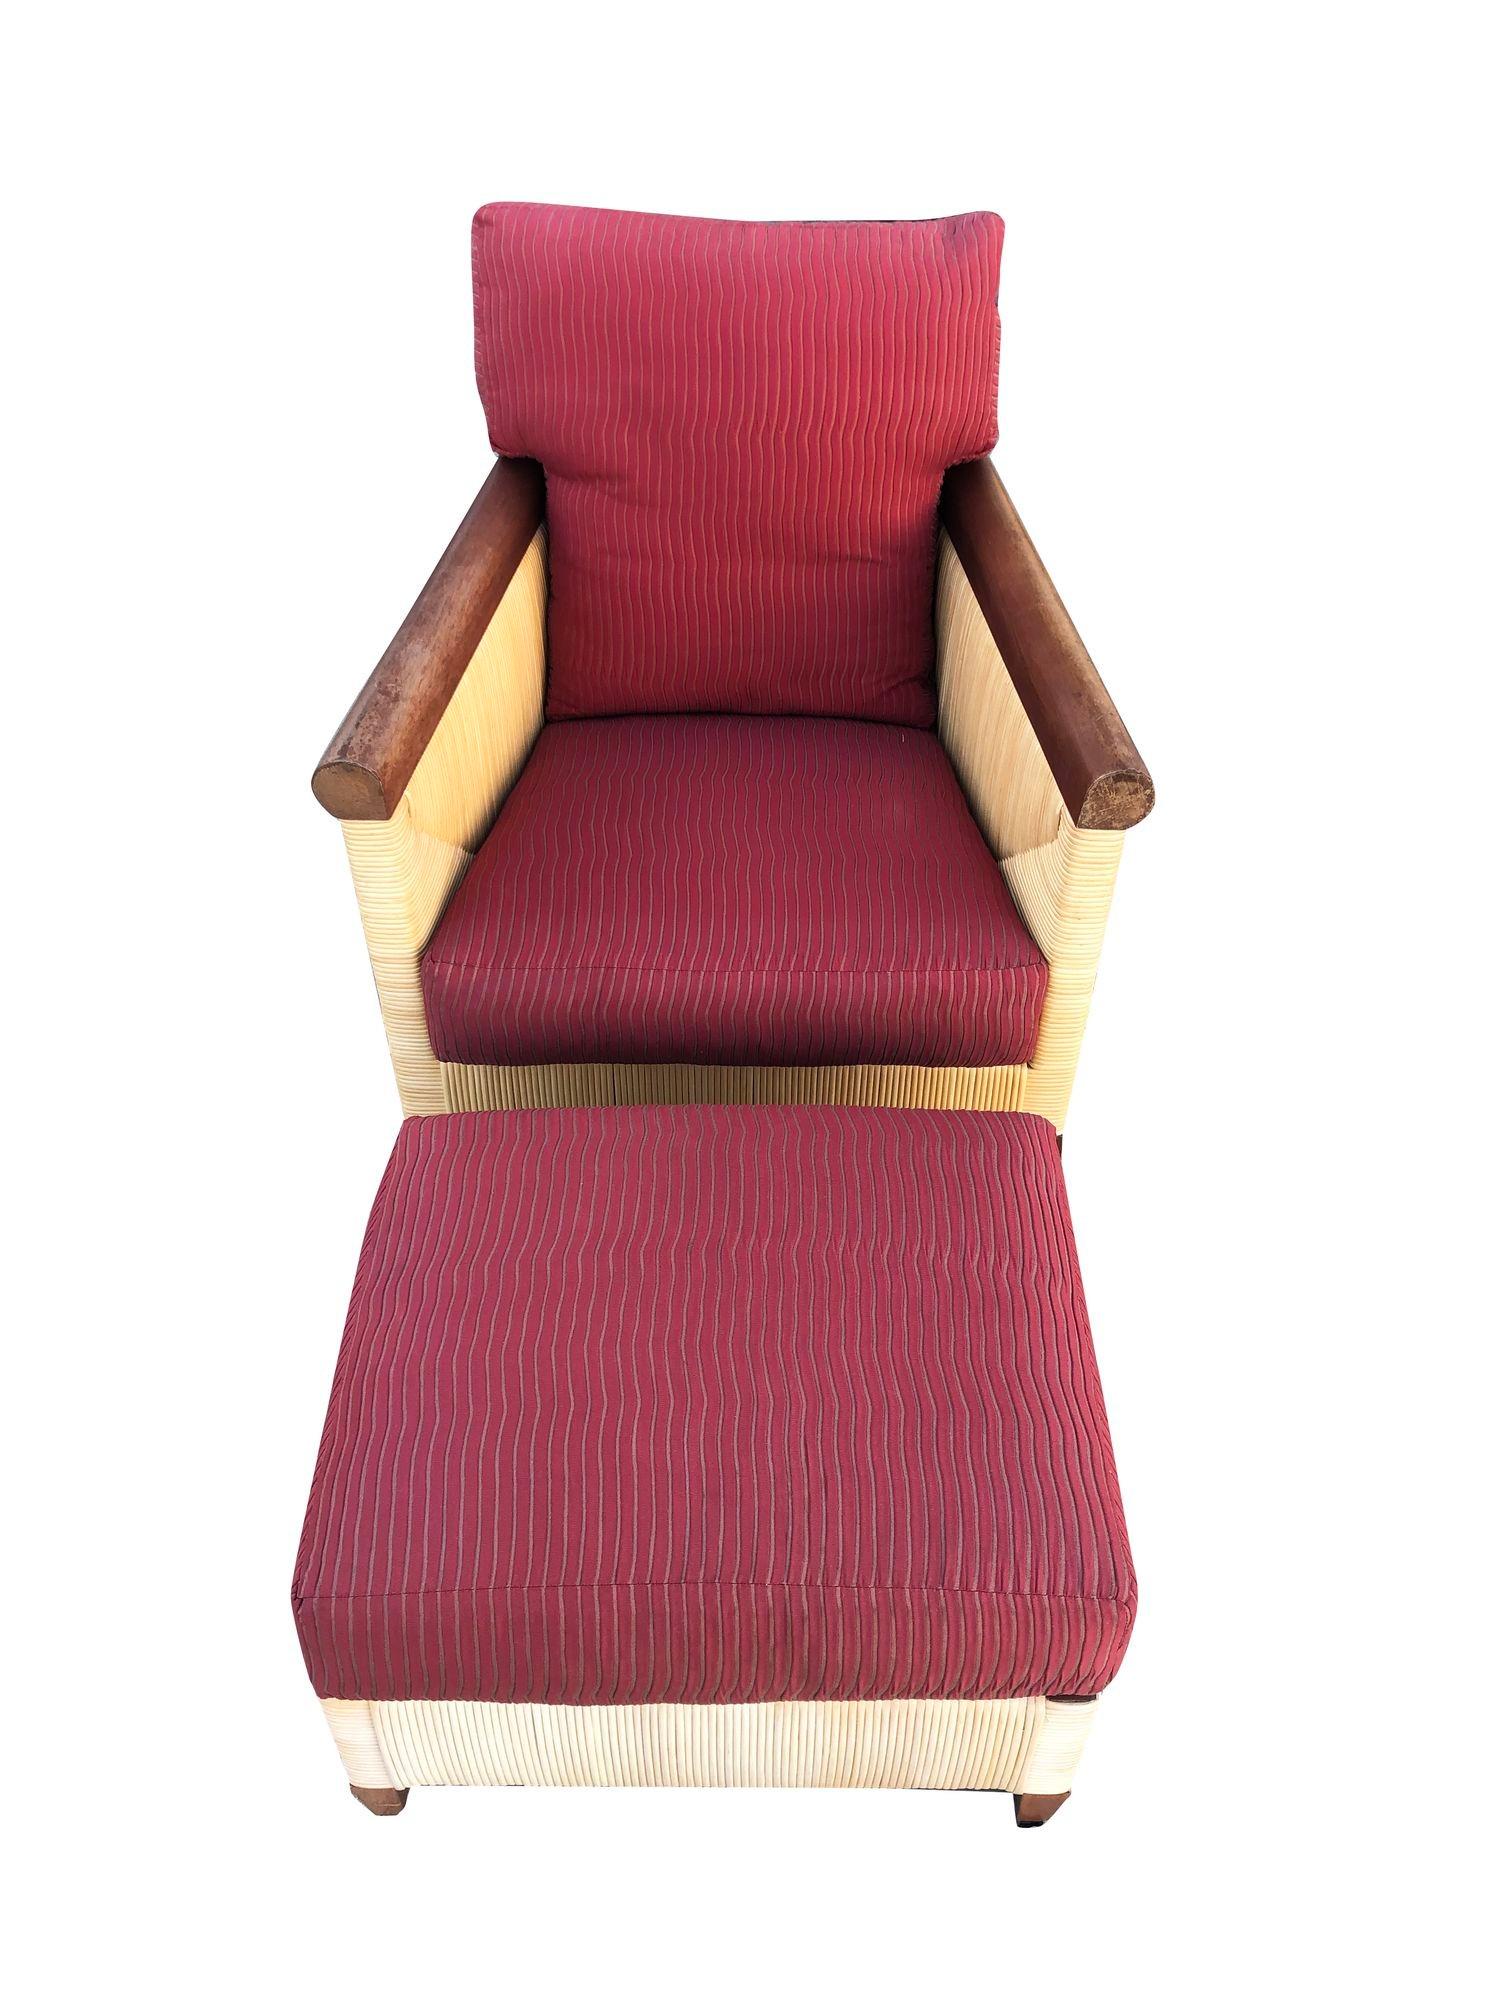 Superbe chaise longue moderne en jonc organique en acajou brun avec ottoman de la collection Merbau à production limitée, conçue par John Hutton (1947-2006) pour Donghia en 1995. Les exemples de cette série particulière sont pratiquement impossibles